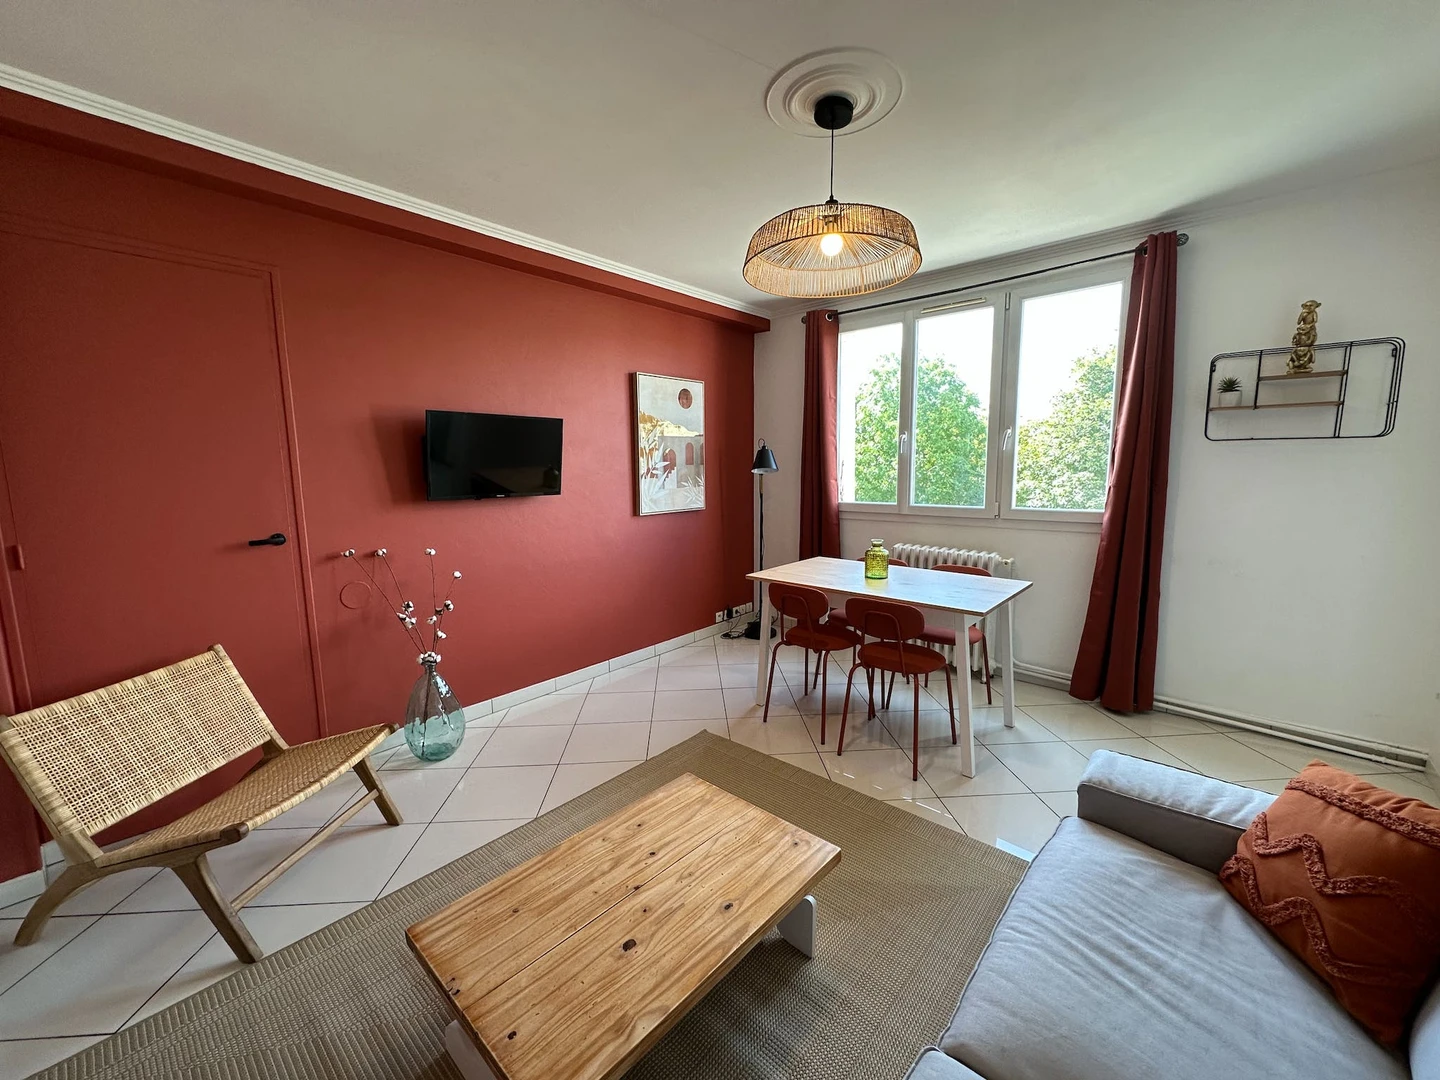 Alquiler de habitaciones por meses en Troyes